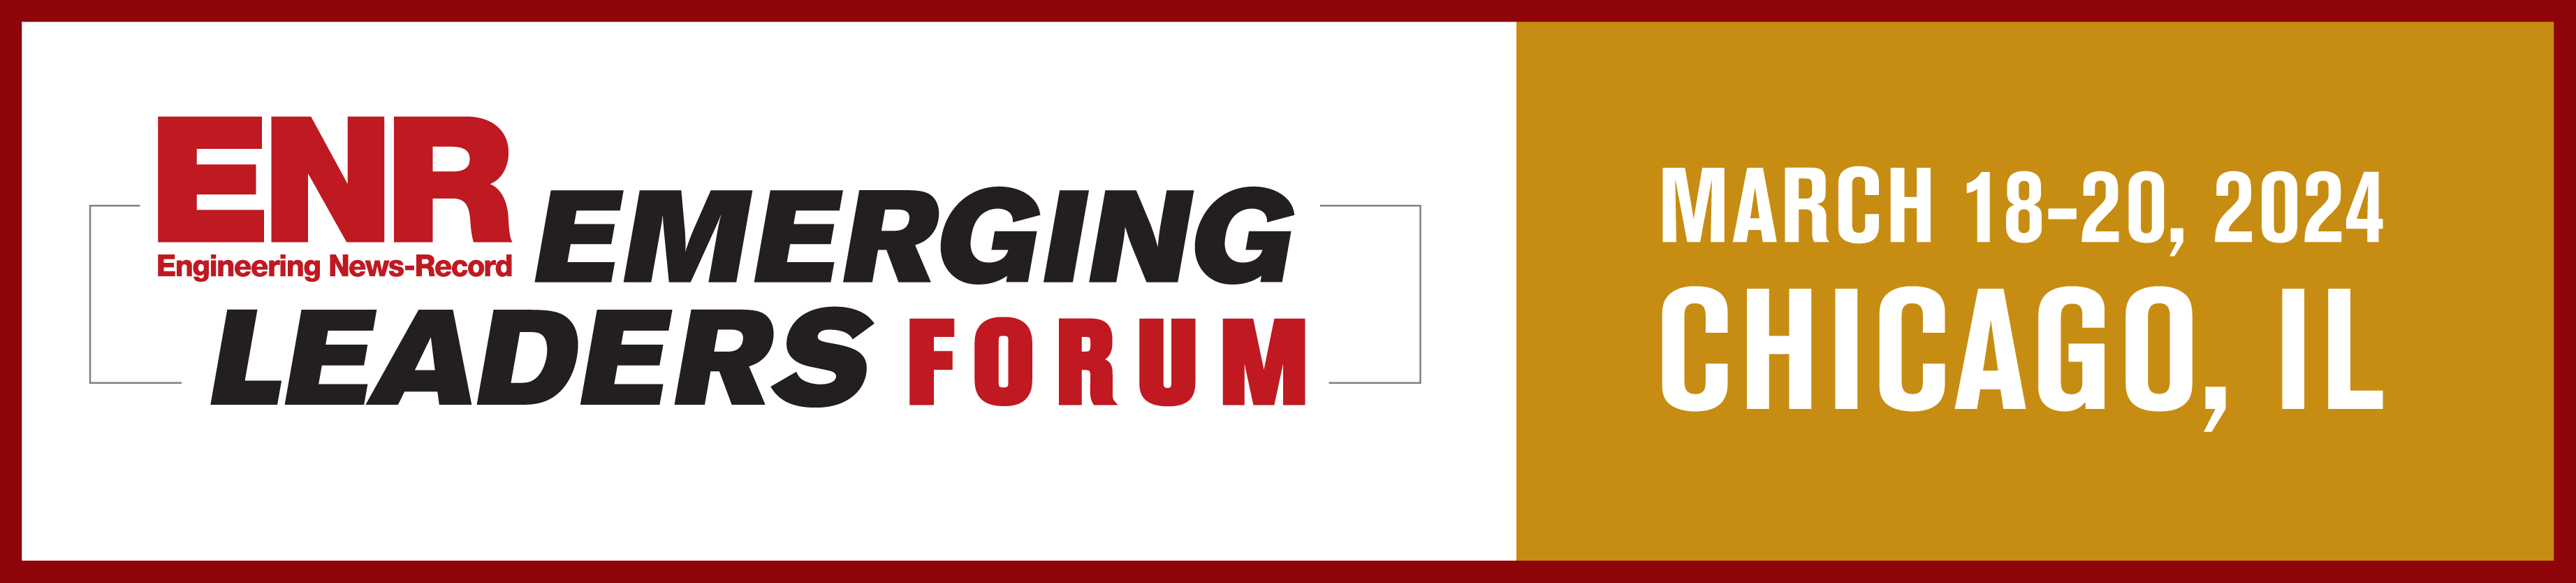 ENR's Emerging Leaders Forum